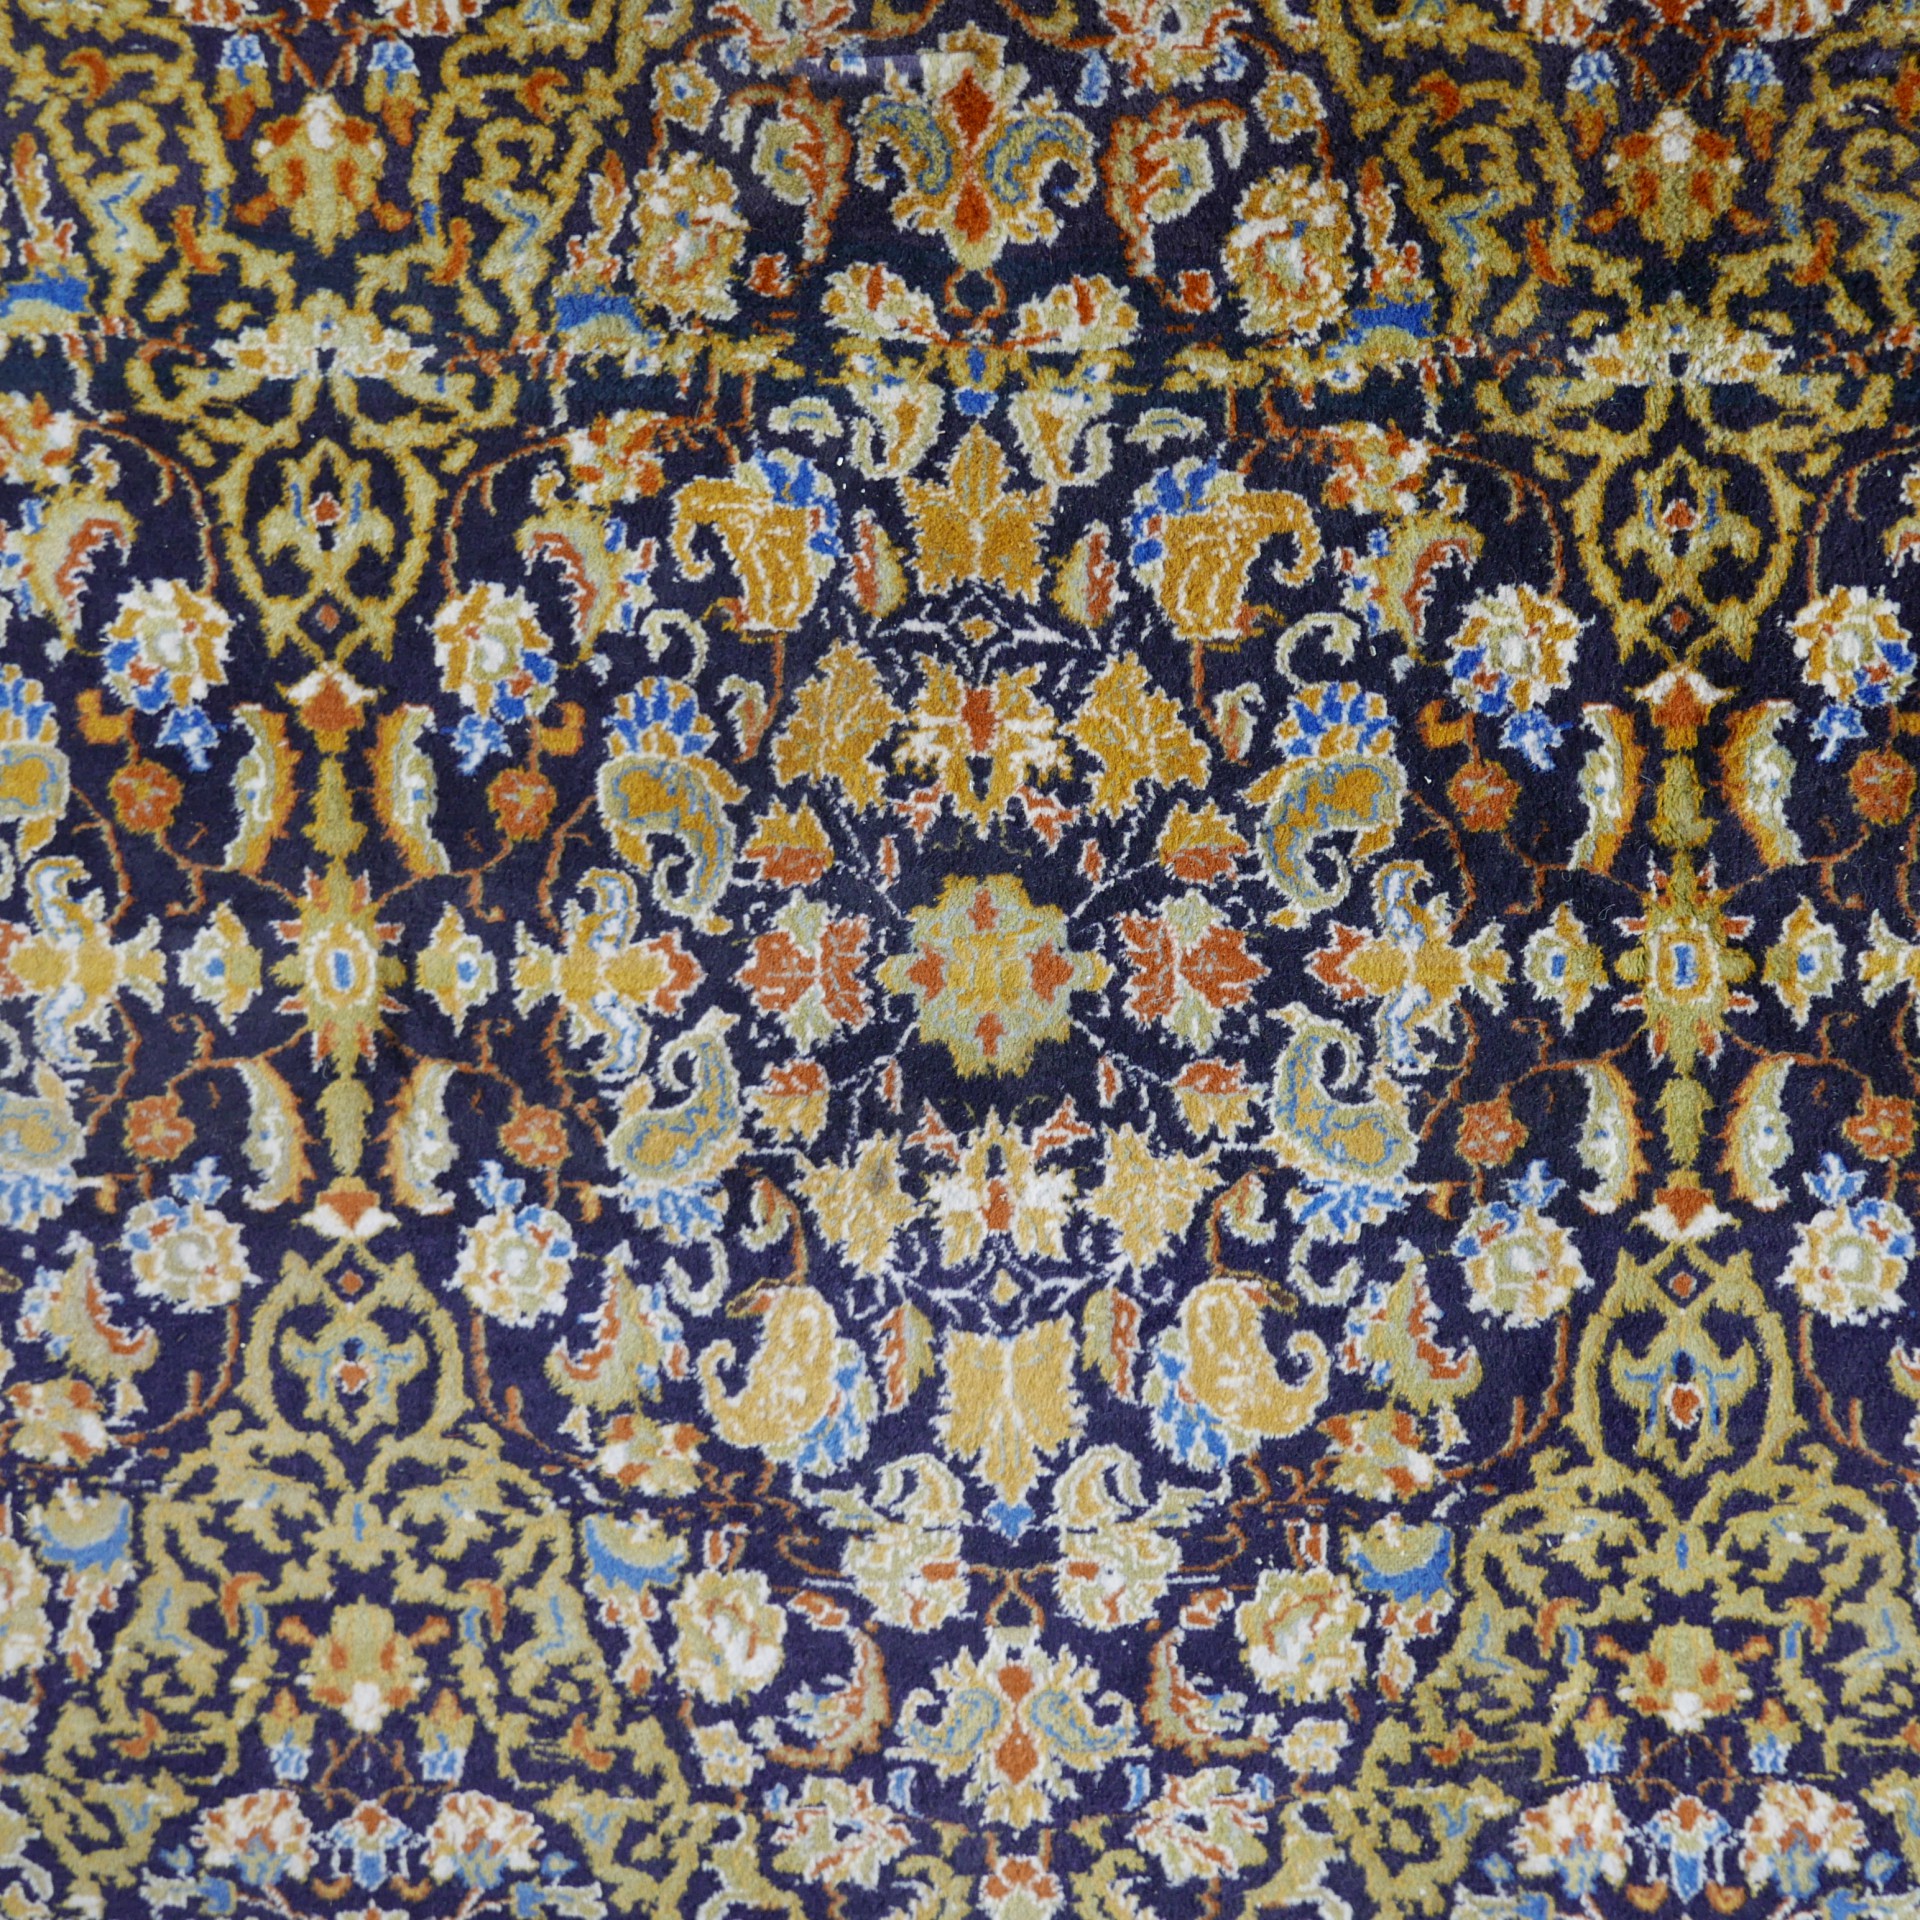 Oven platform Niet ingewikkeld Perzisch tapijt geel » Van Dijk & Ko